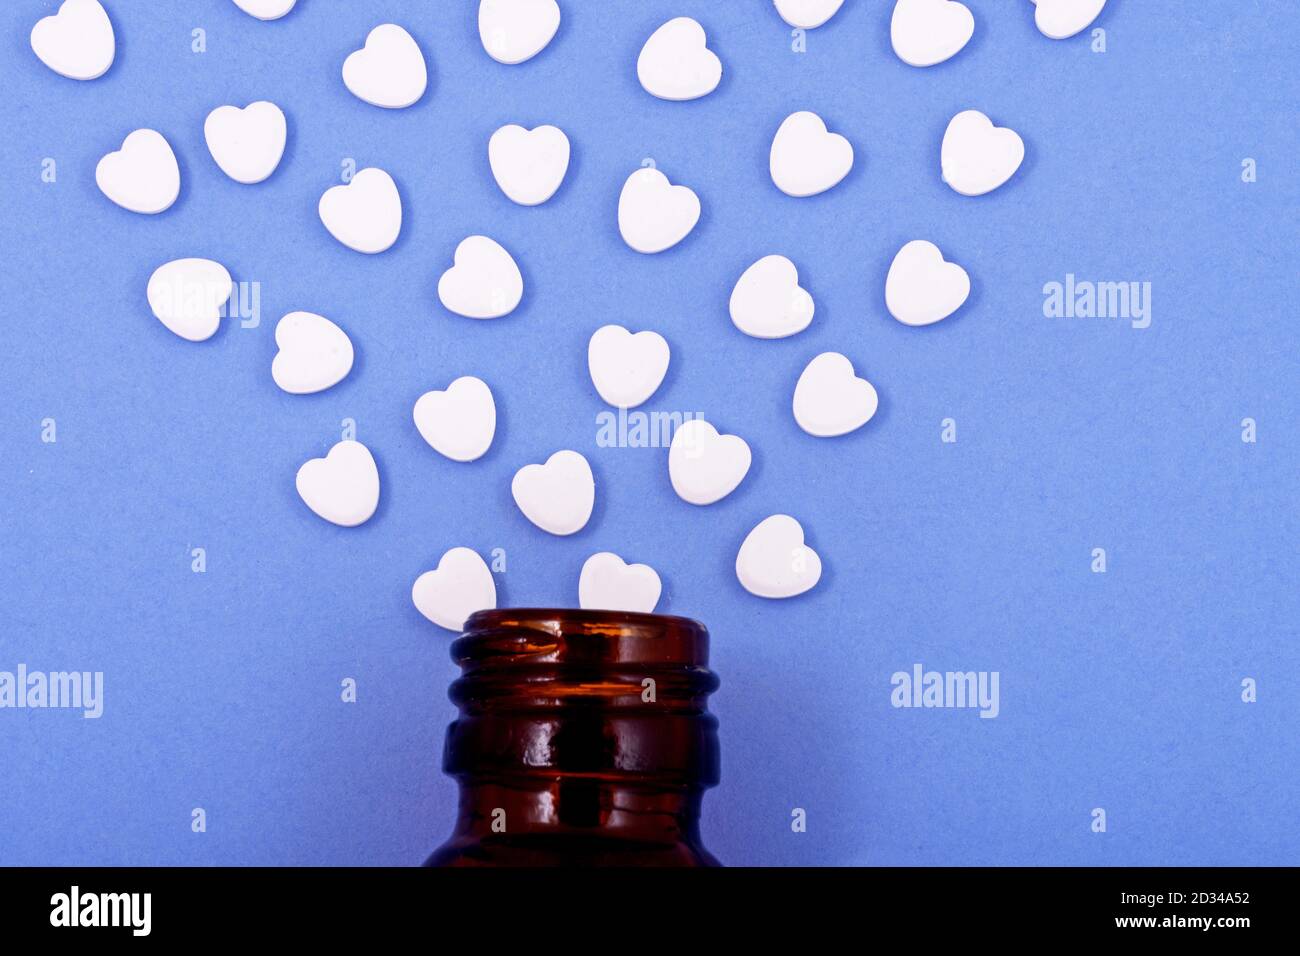 Herzförmige Pillen aus Flaschenglas auf blauem Hintergrund. Medikamente, die Menschen helfen. Stockfoto